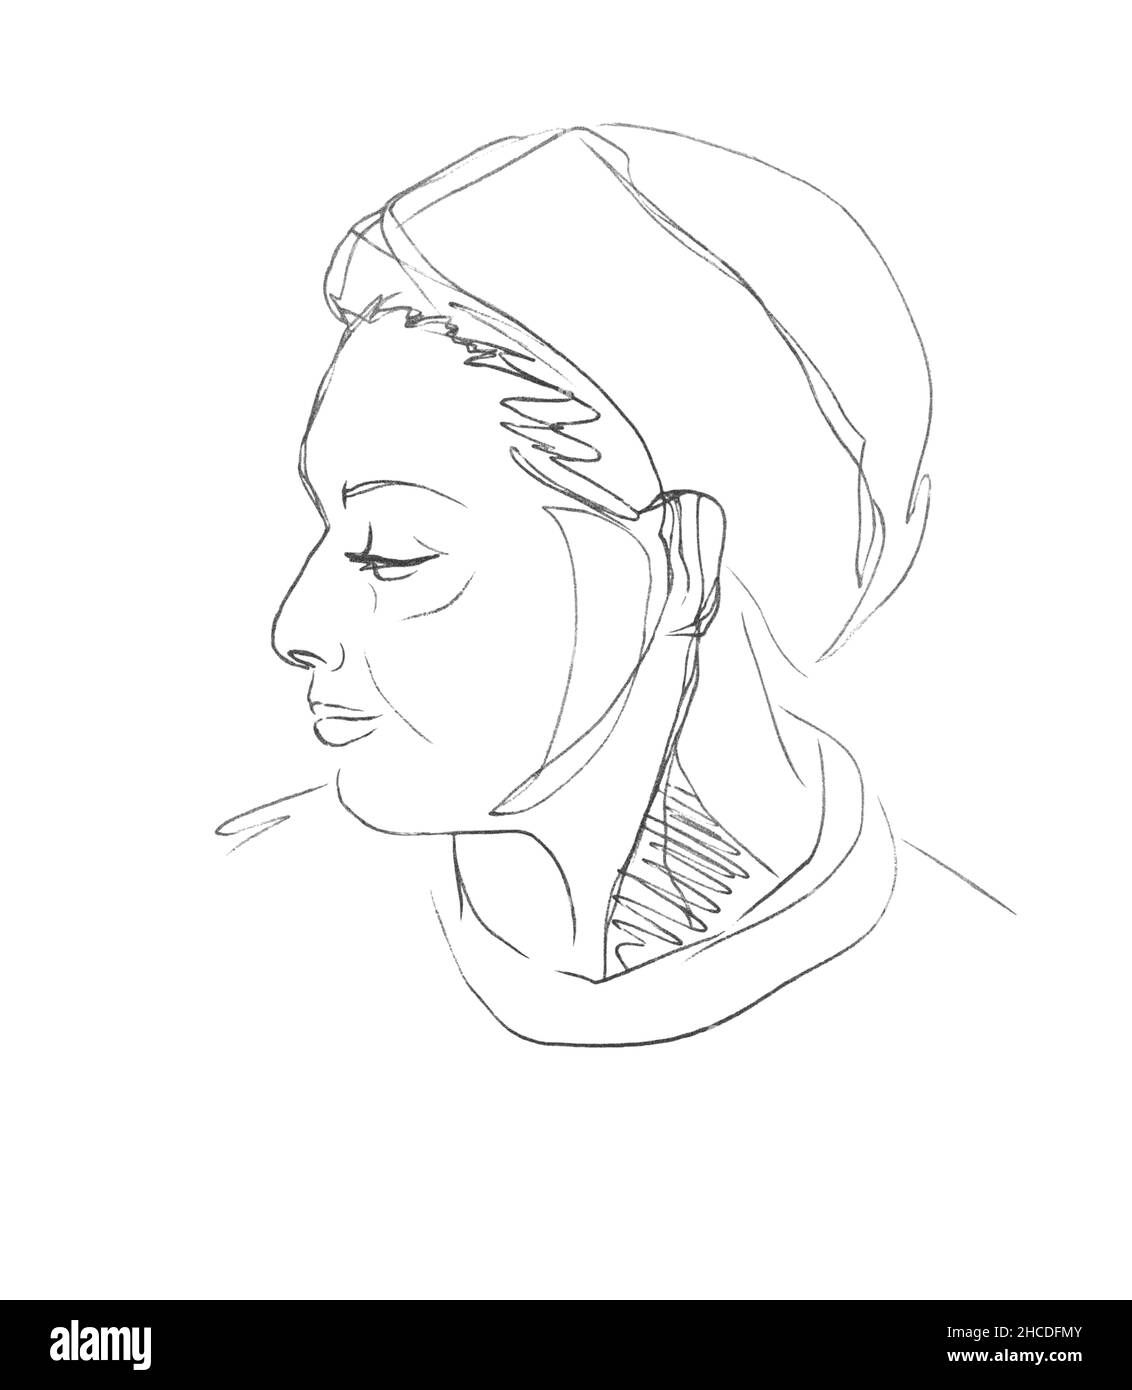 Vektorlinie Skizze einer halben Drehung des Gesichts einer erwachsenen Frau aus dem Nahen Osten mit einem Turban auf dem Kopf. Mit einem Stift gezeichnetes Porträt auf weißem Papier. Stock Vektor